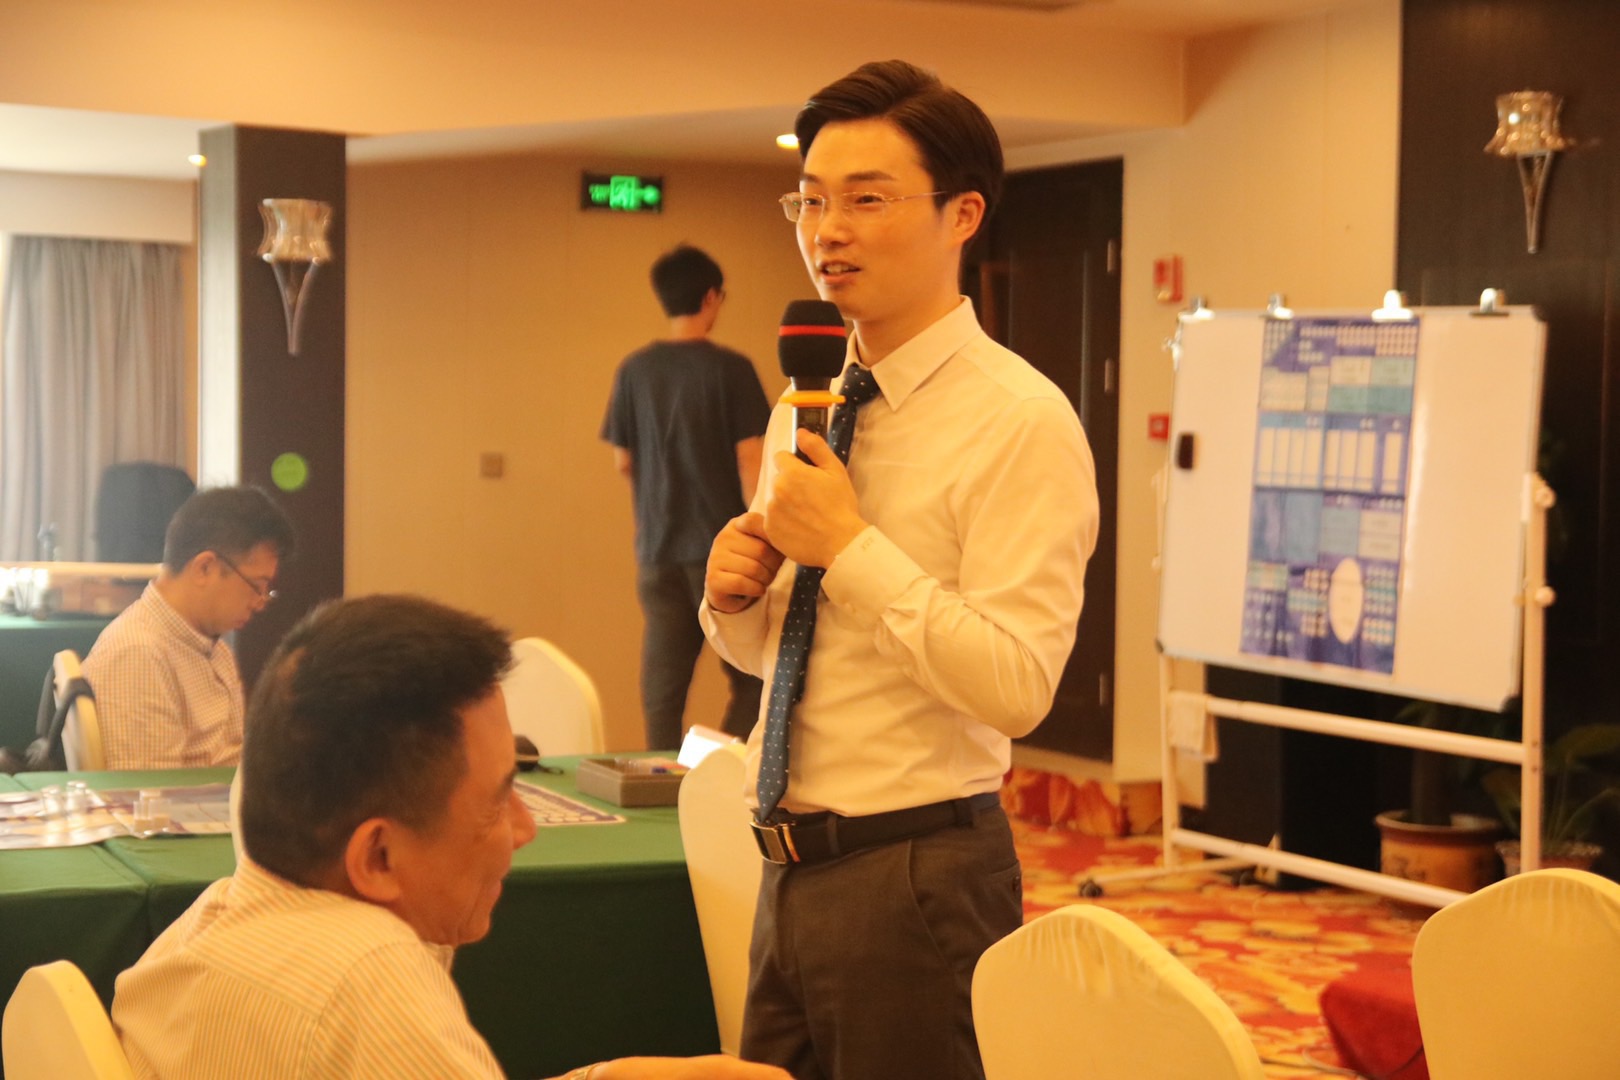 重庆 5G 网络建设及协作：资深 IT 工程师的见证与分享  第6张